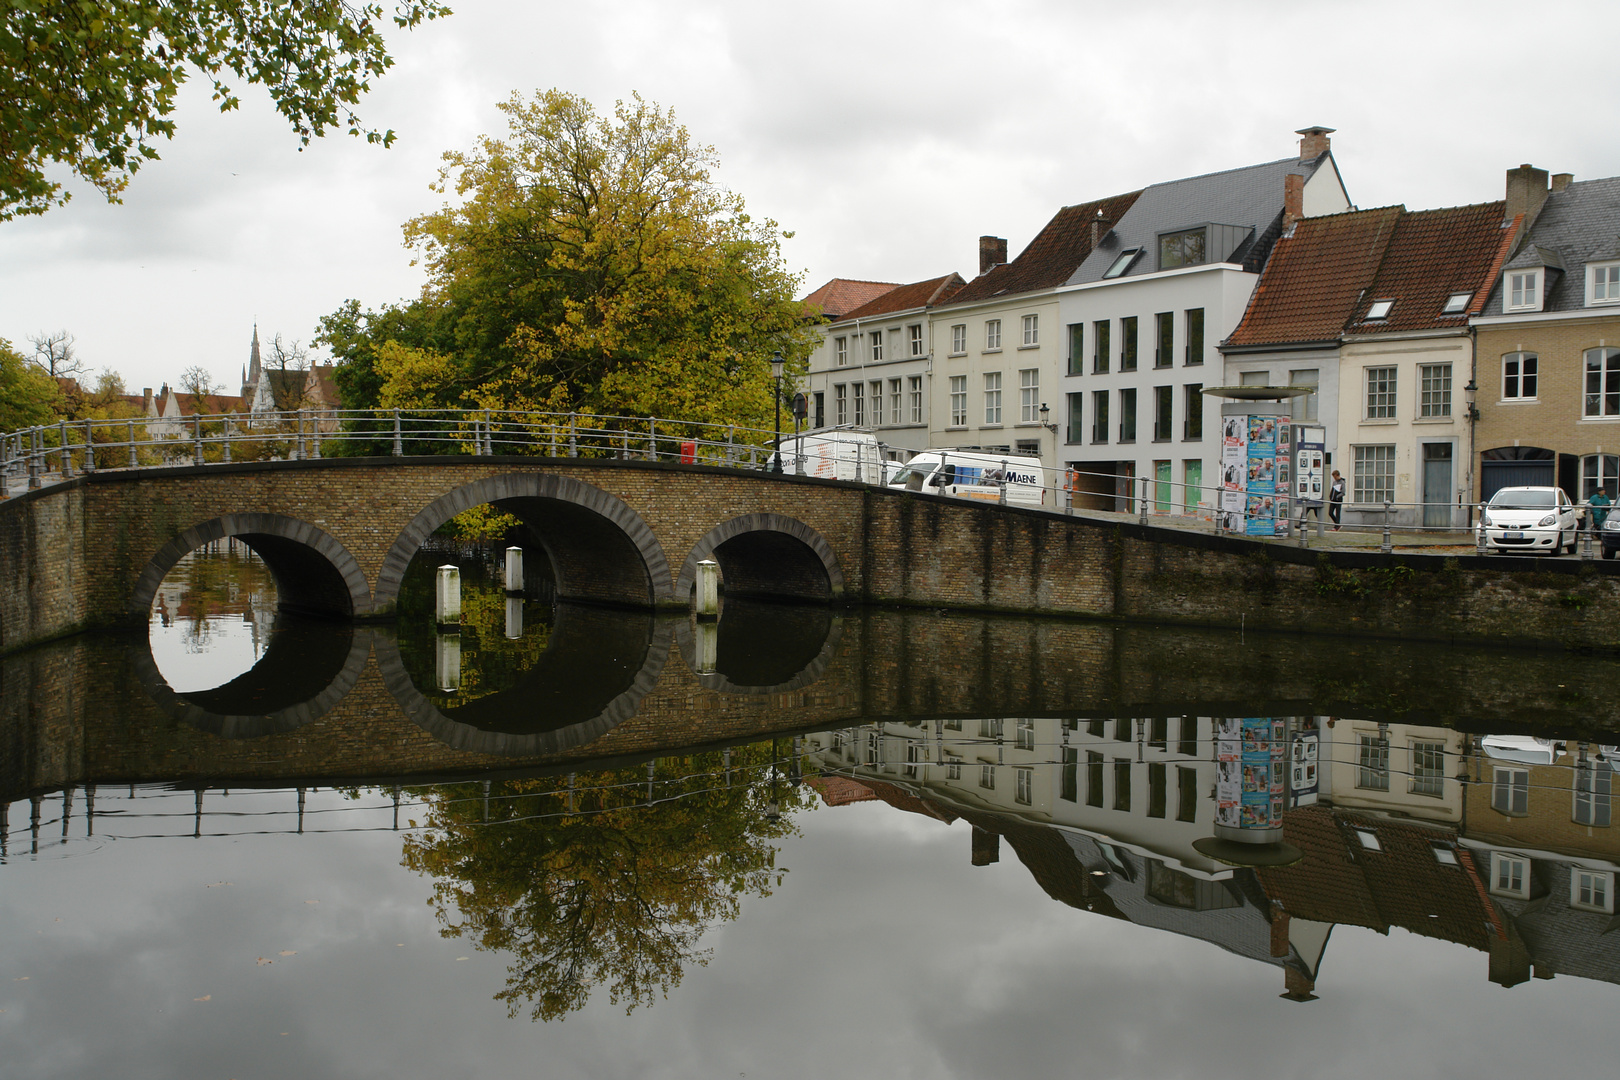 20151020_105009_BE_Brugge